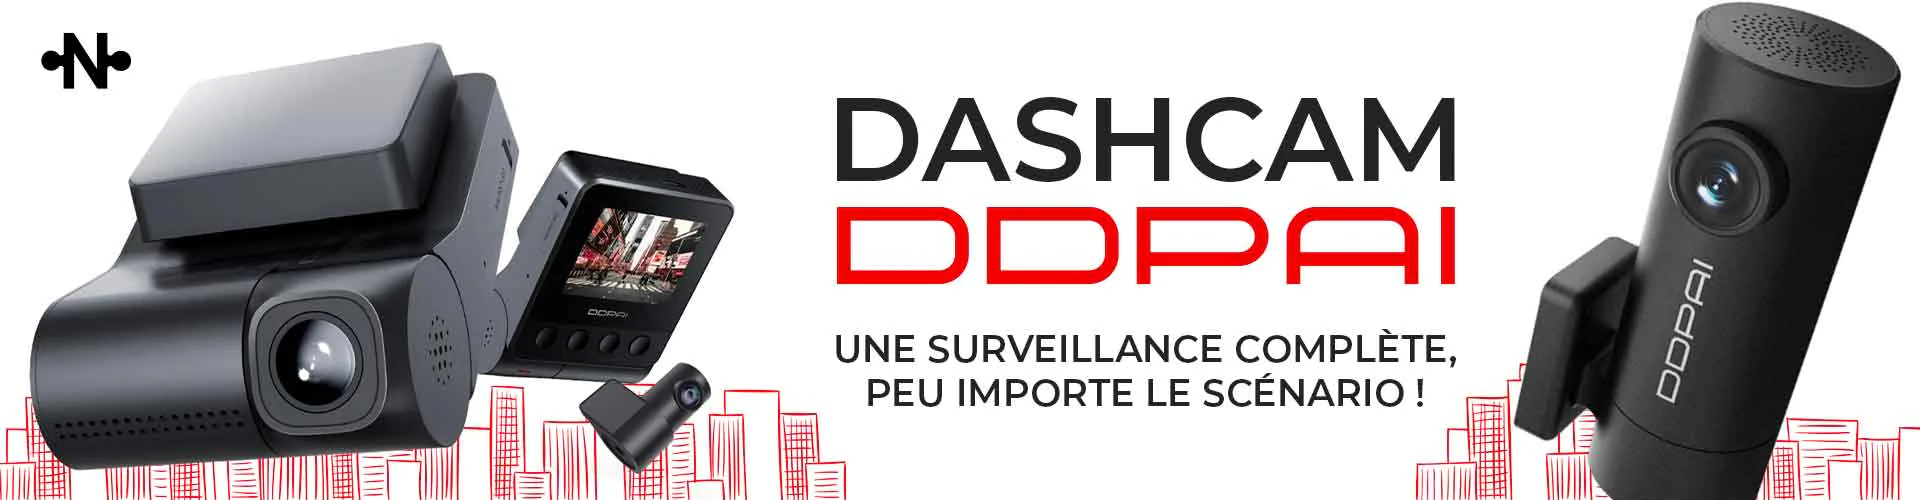 Dashcam DDPAI une surveillance complète, peu importe le scénario !